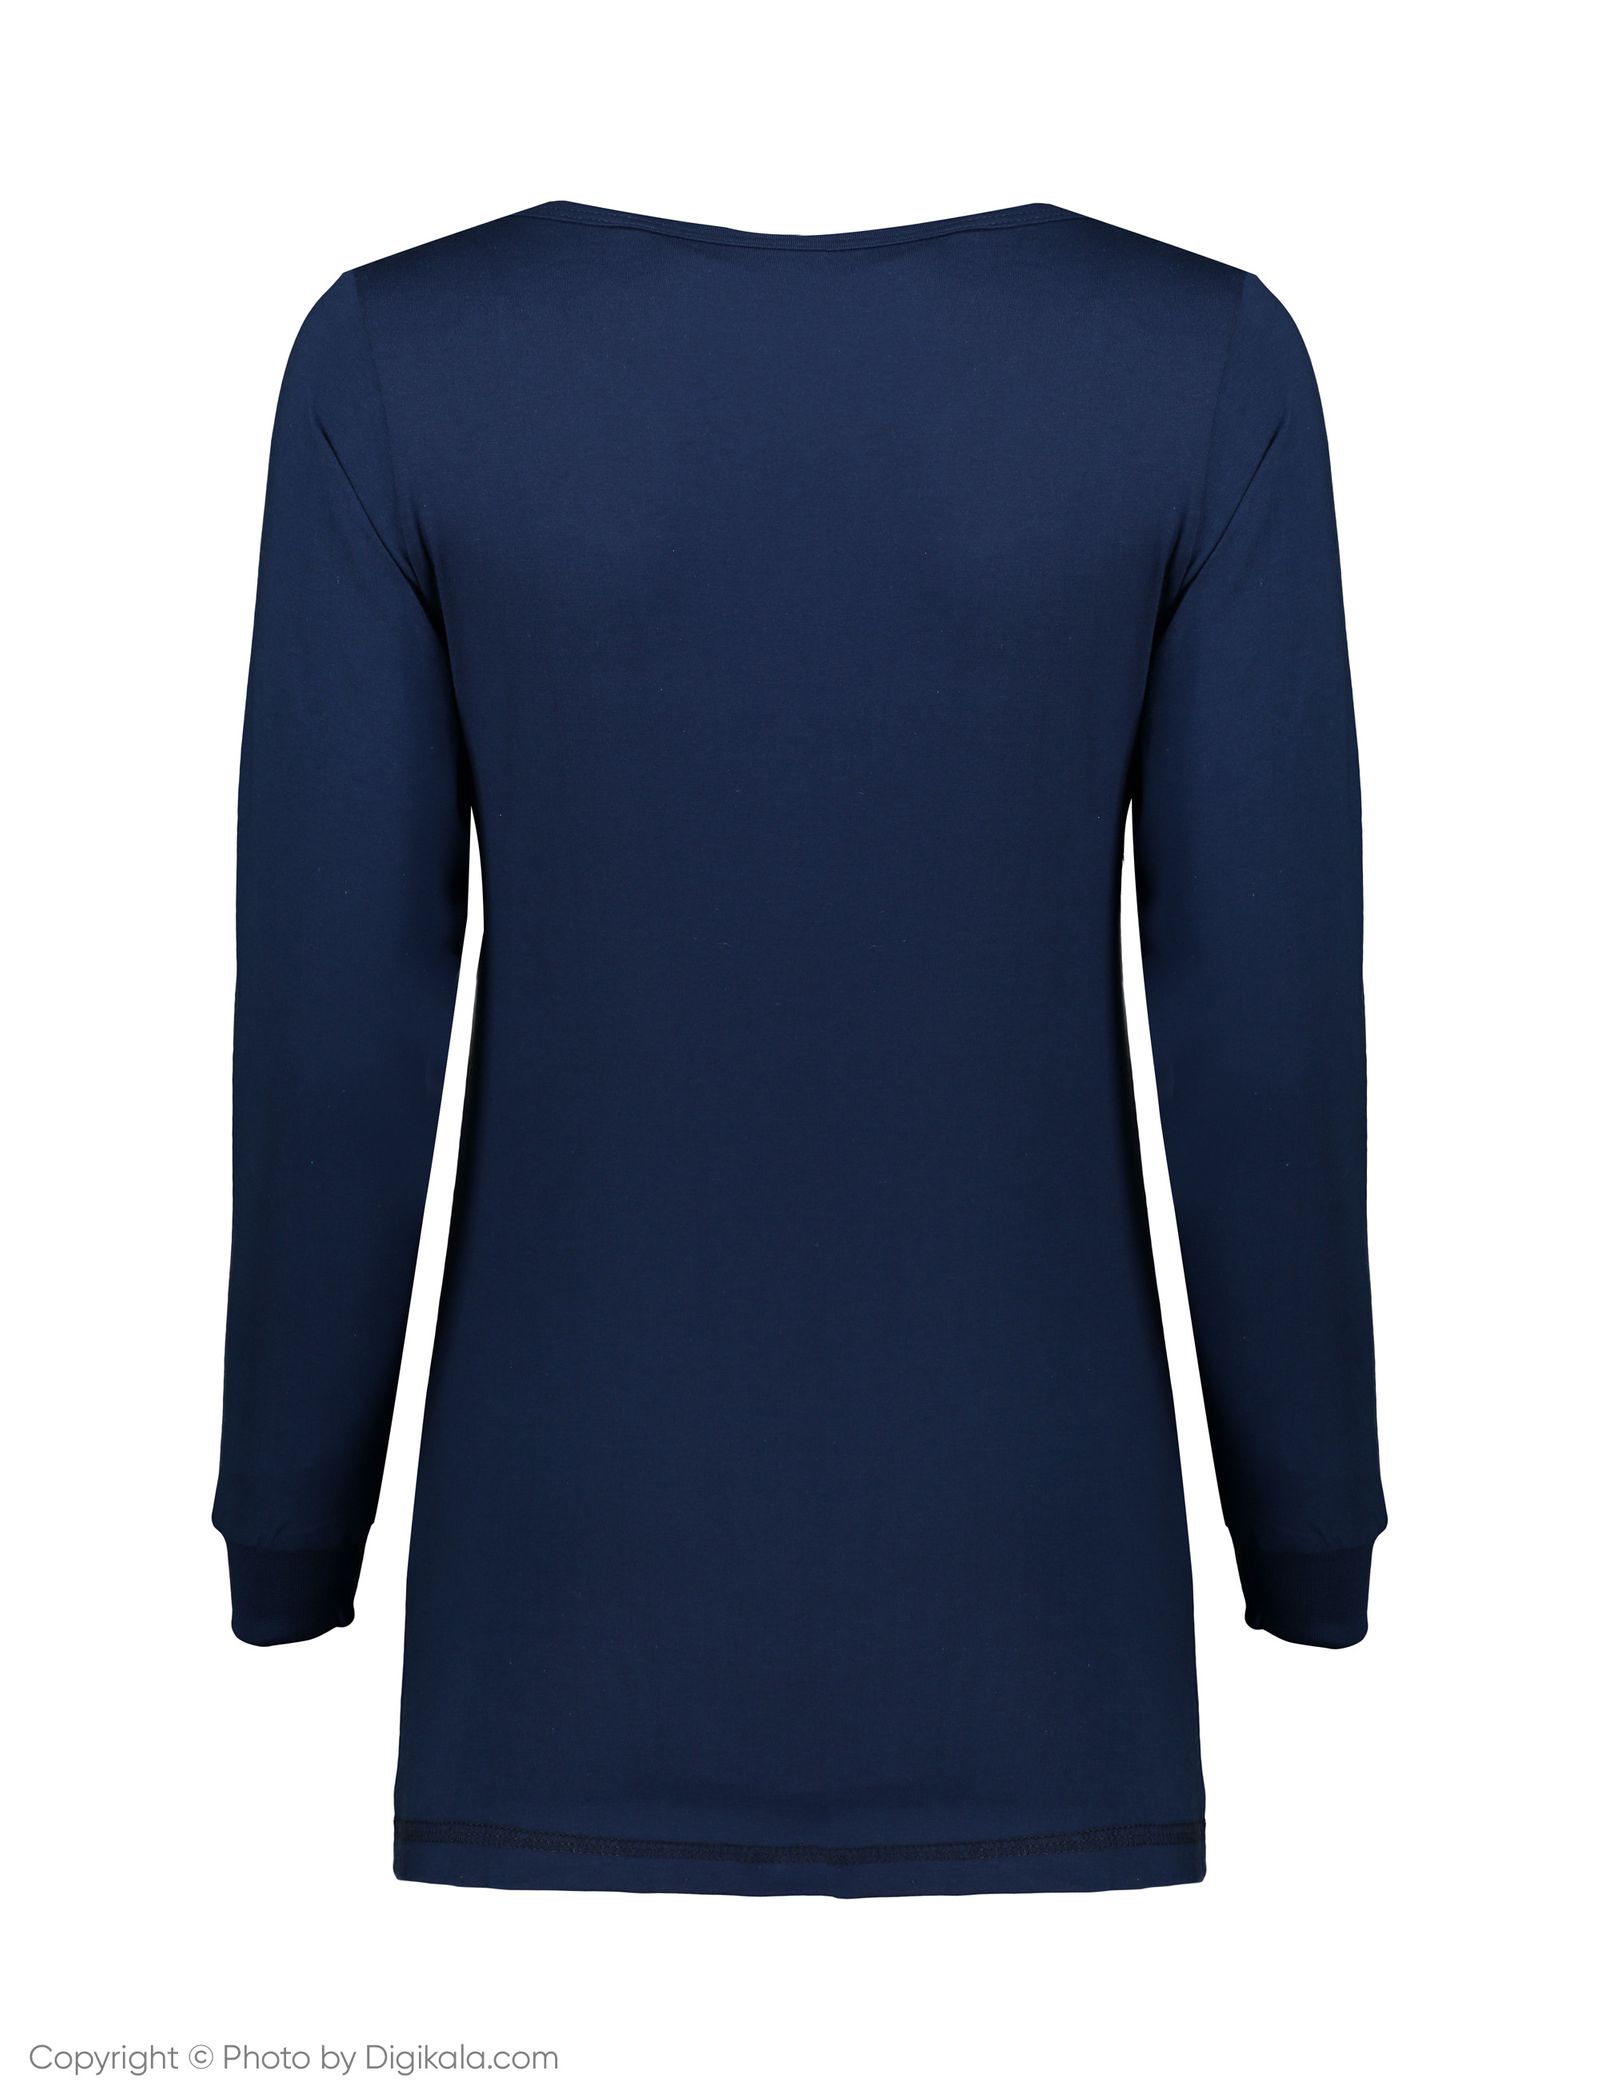 ست تی شرت و شلوار راحتی زنانه ناربن مدل1521168-60 - سورمه ای - 5